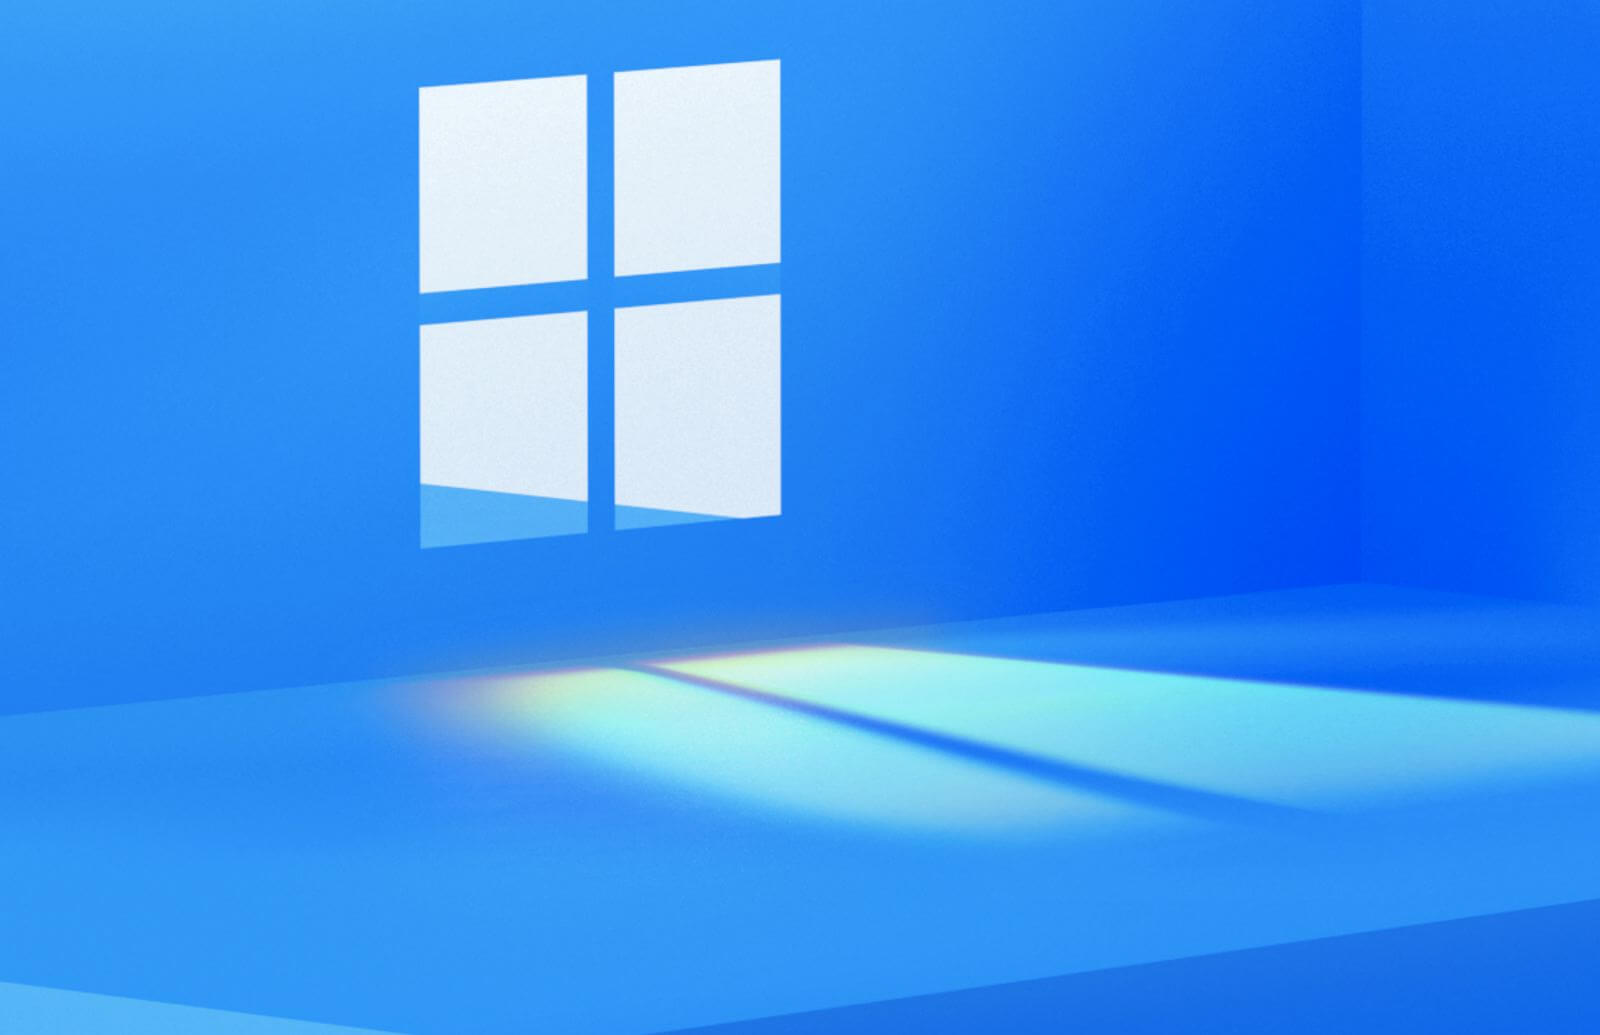 Windows 11 (Sun Valley) tải hình nền - Pureinfotech - Tải ngay hình nền đẹp lung linh và chất lượng cao của Windows 11 (Sun Valley) từ Pureinfotech. Bạn sẽ được tận hưởng trải nghiệm tuyệt vời với hình nền đẹp mắt, tốc độ tải nhanh chóng và đầy tiện ích dễ sử dụng. Để tải ngay và trải nghiệm thôi!